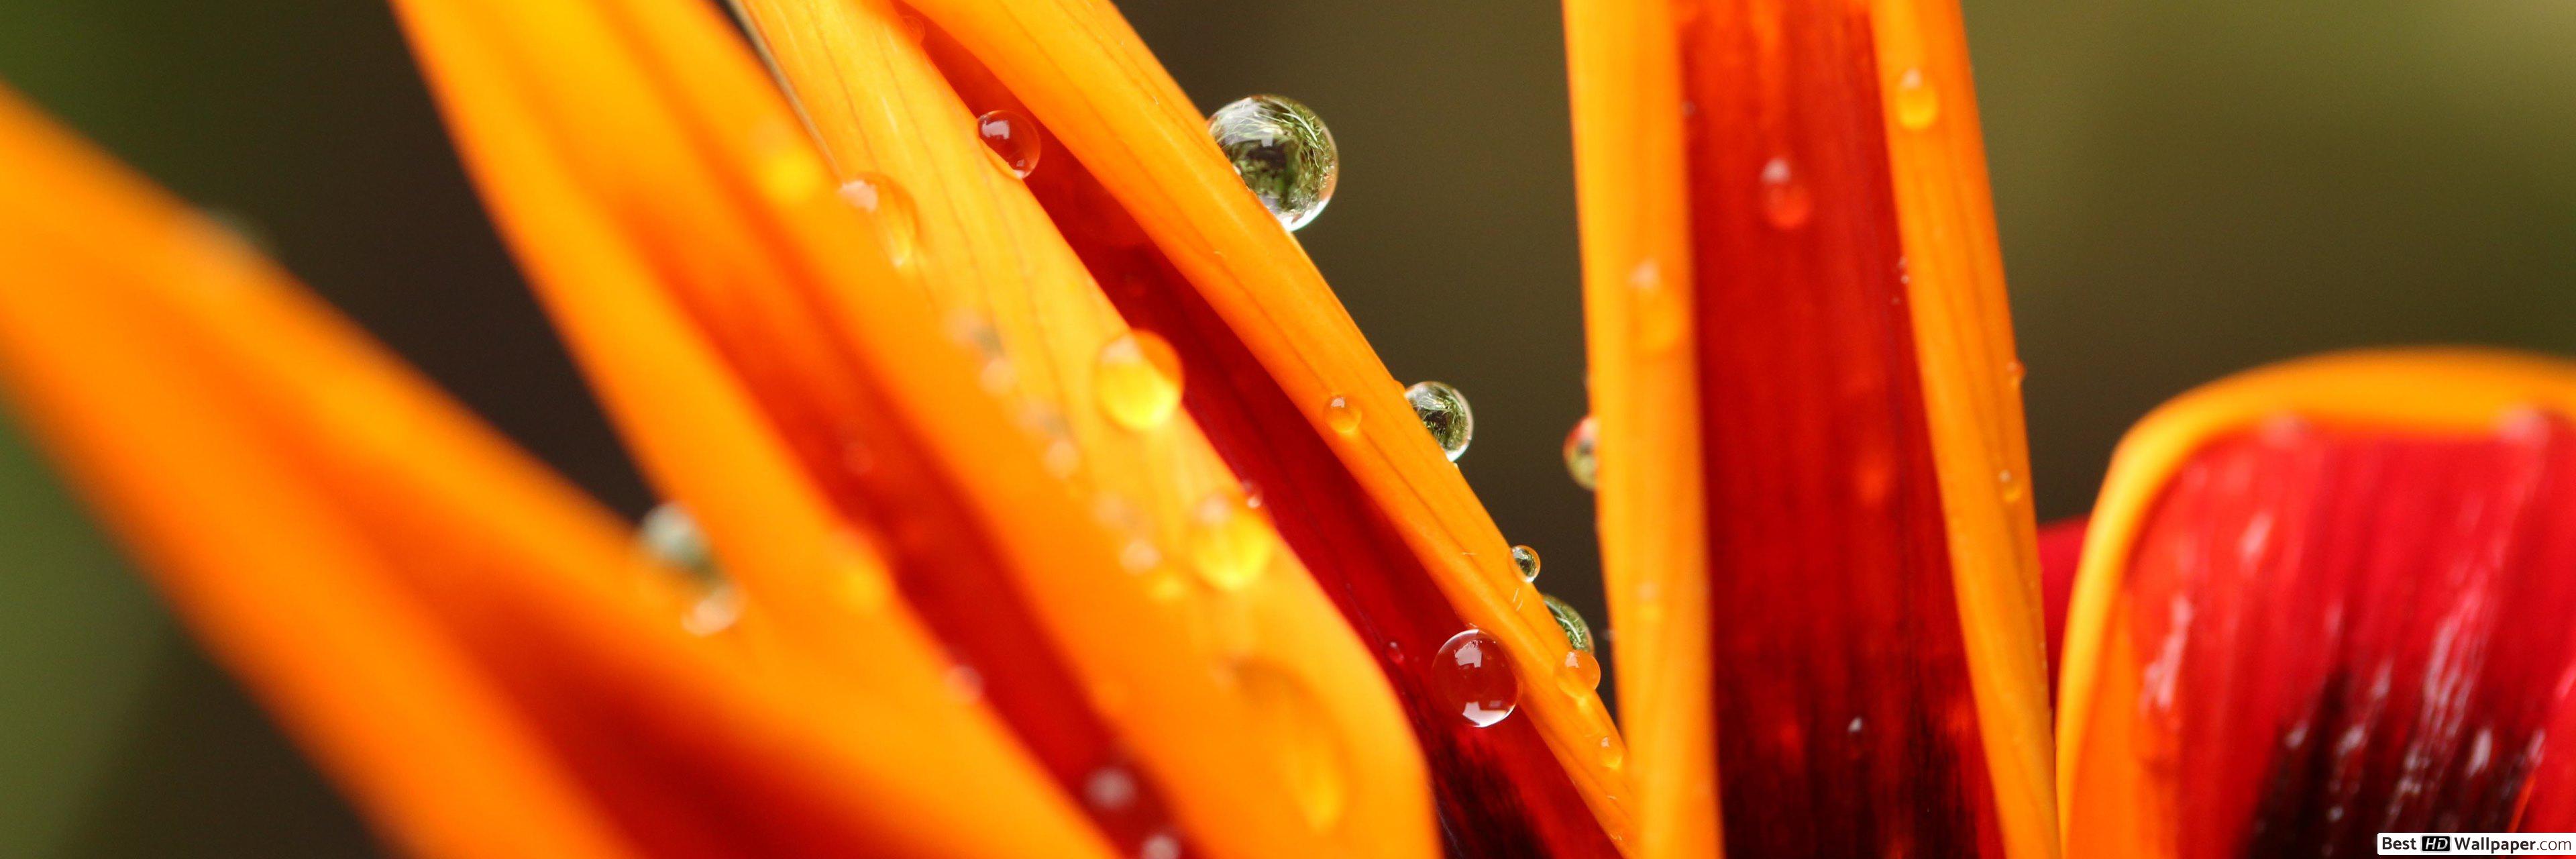 Water Drop S On Orange Flower - HD Wallpaper 